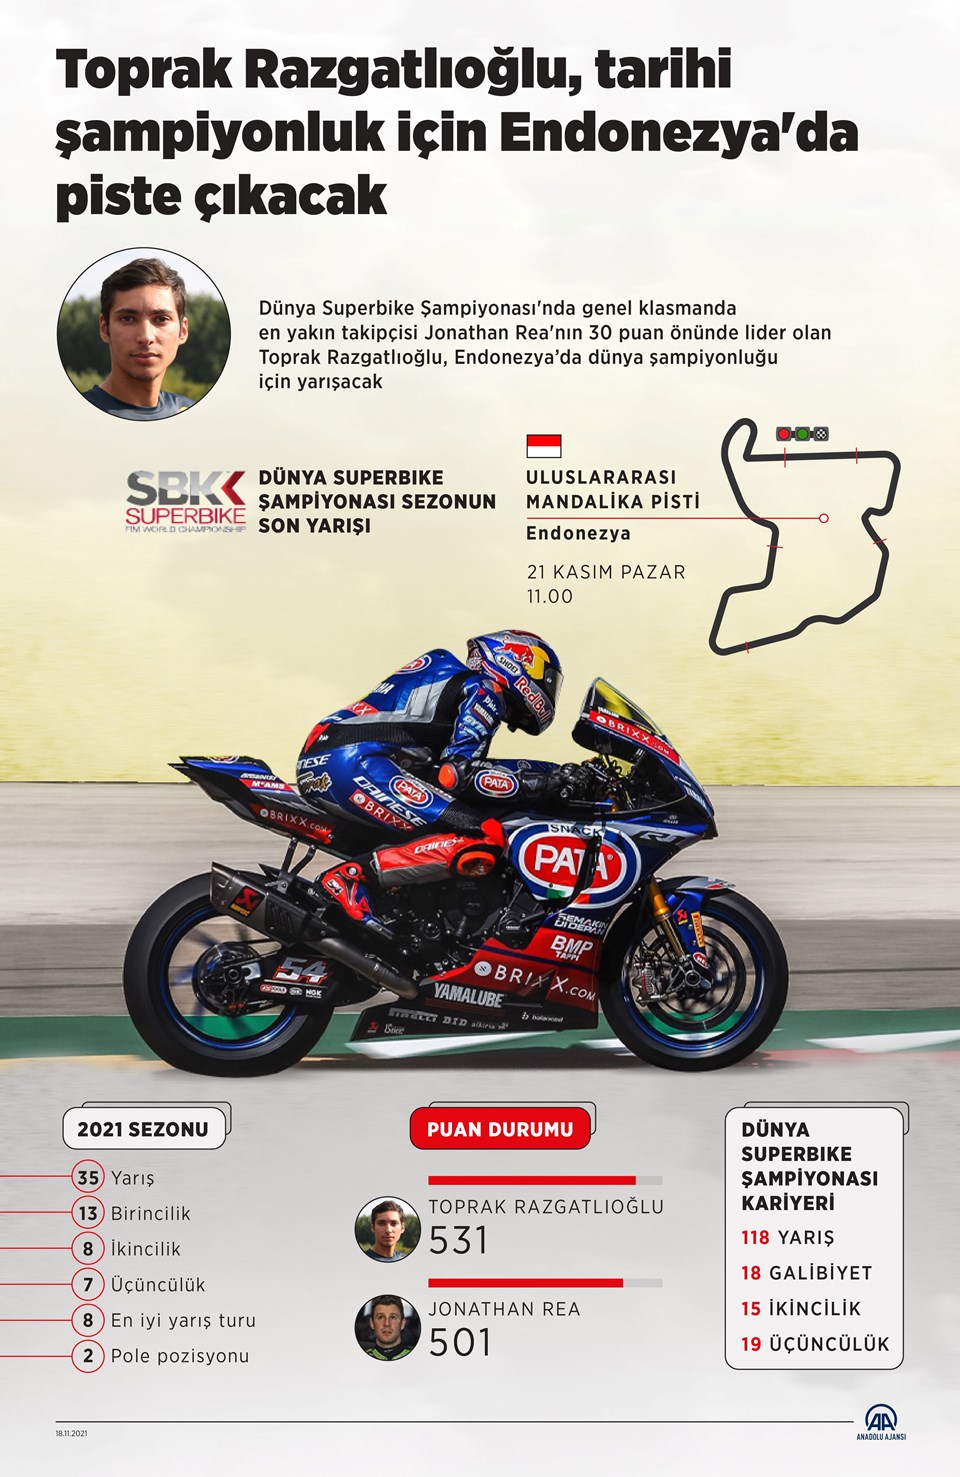 Toprak Razgatlıoğlu Dünya Superbike Şampiyonası'nda Endonezya'da piste çıkacak - 1